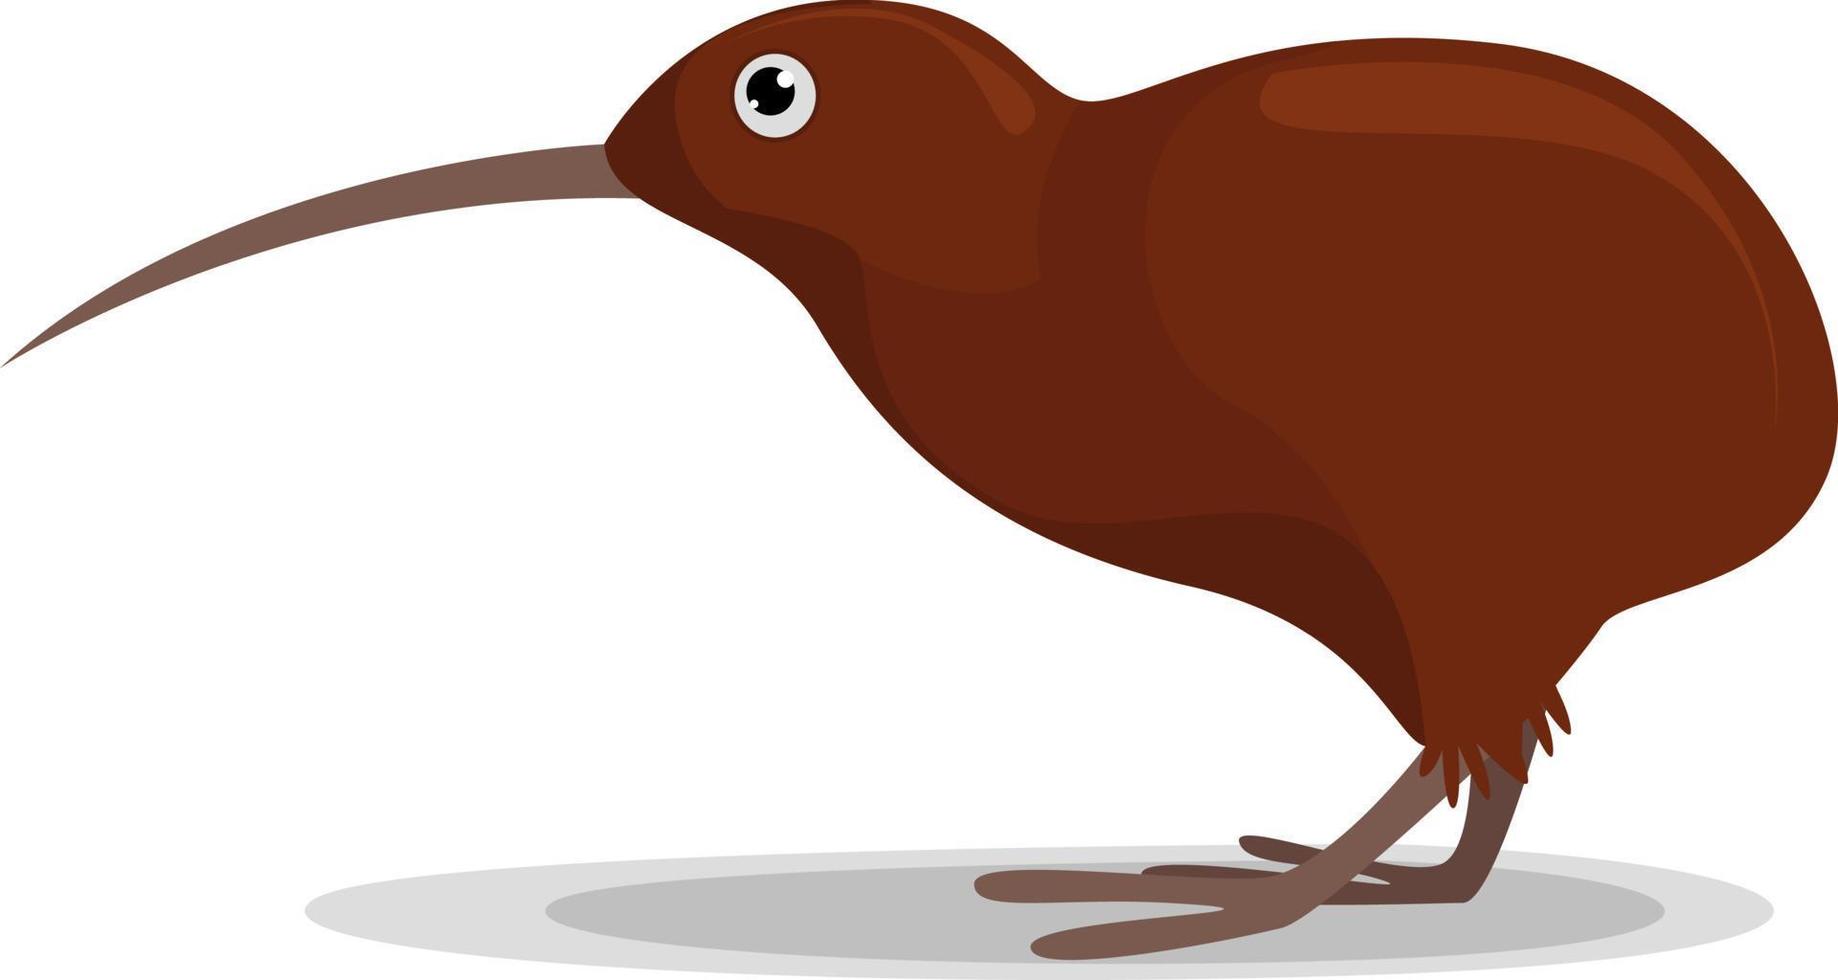 oiseau kiwi triste, illustration, vecteur sur fond blanc